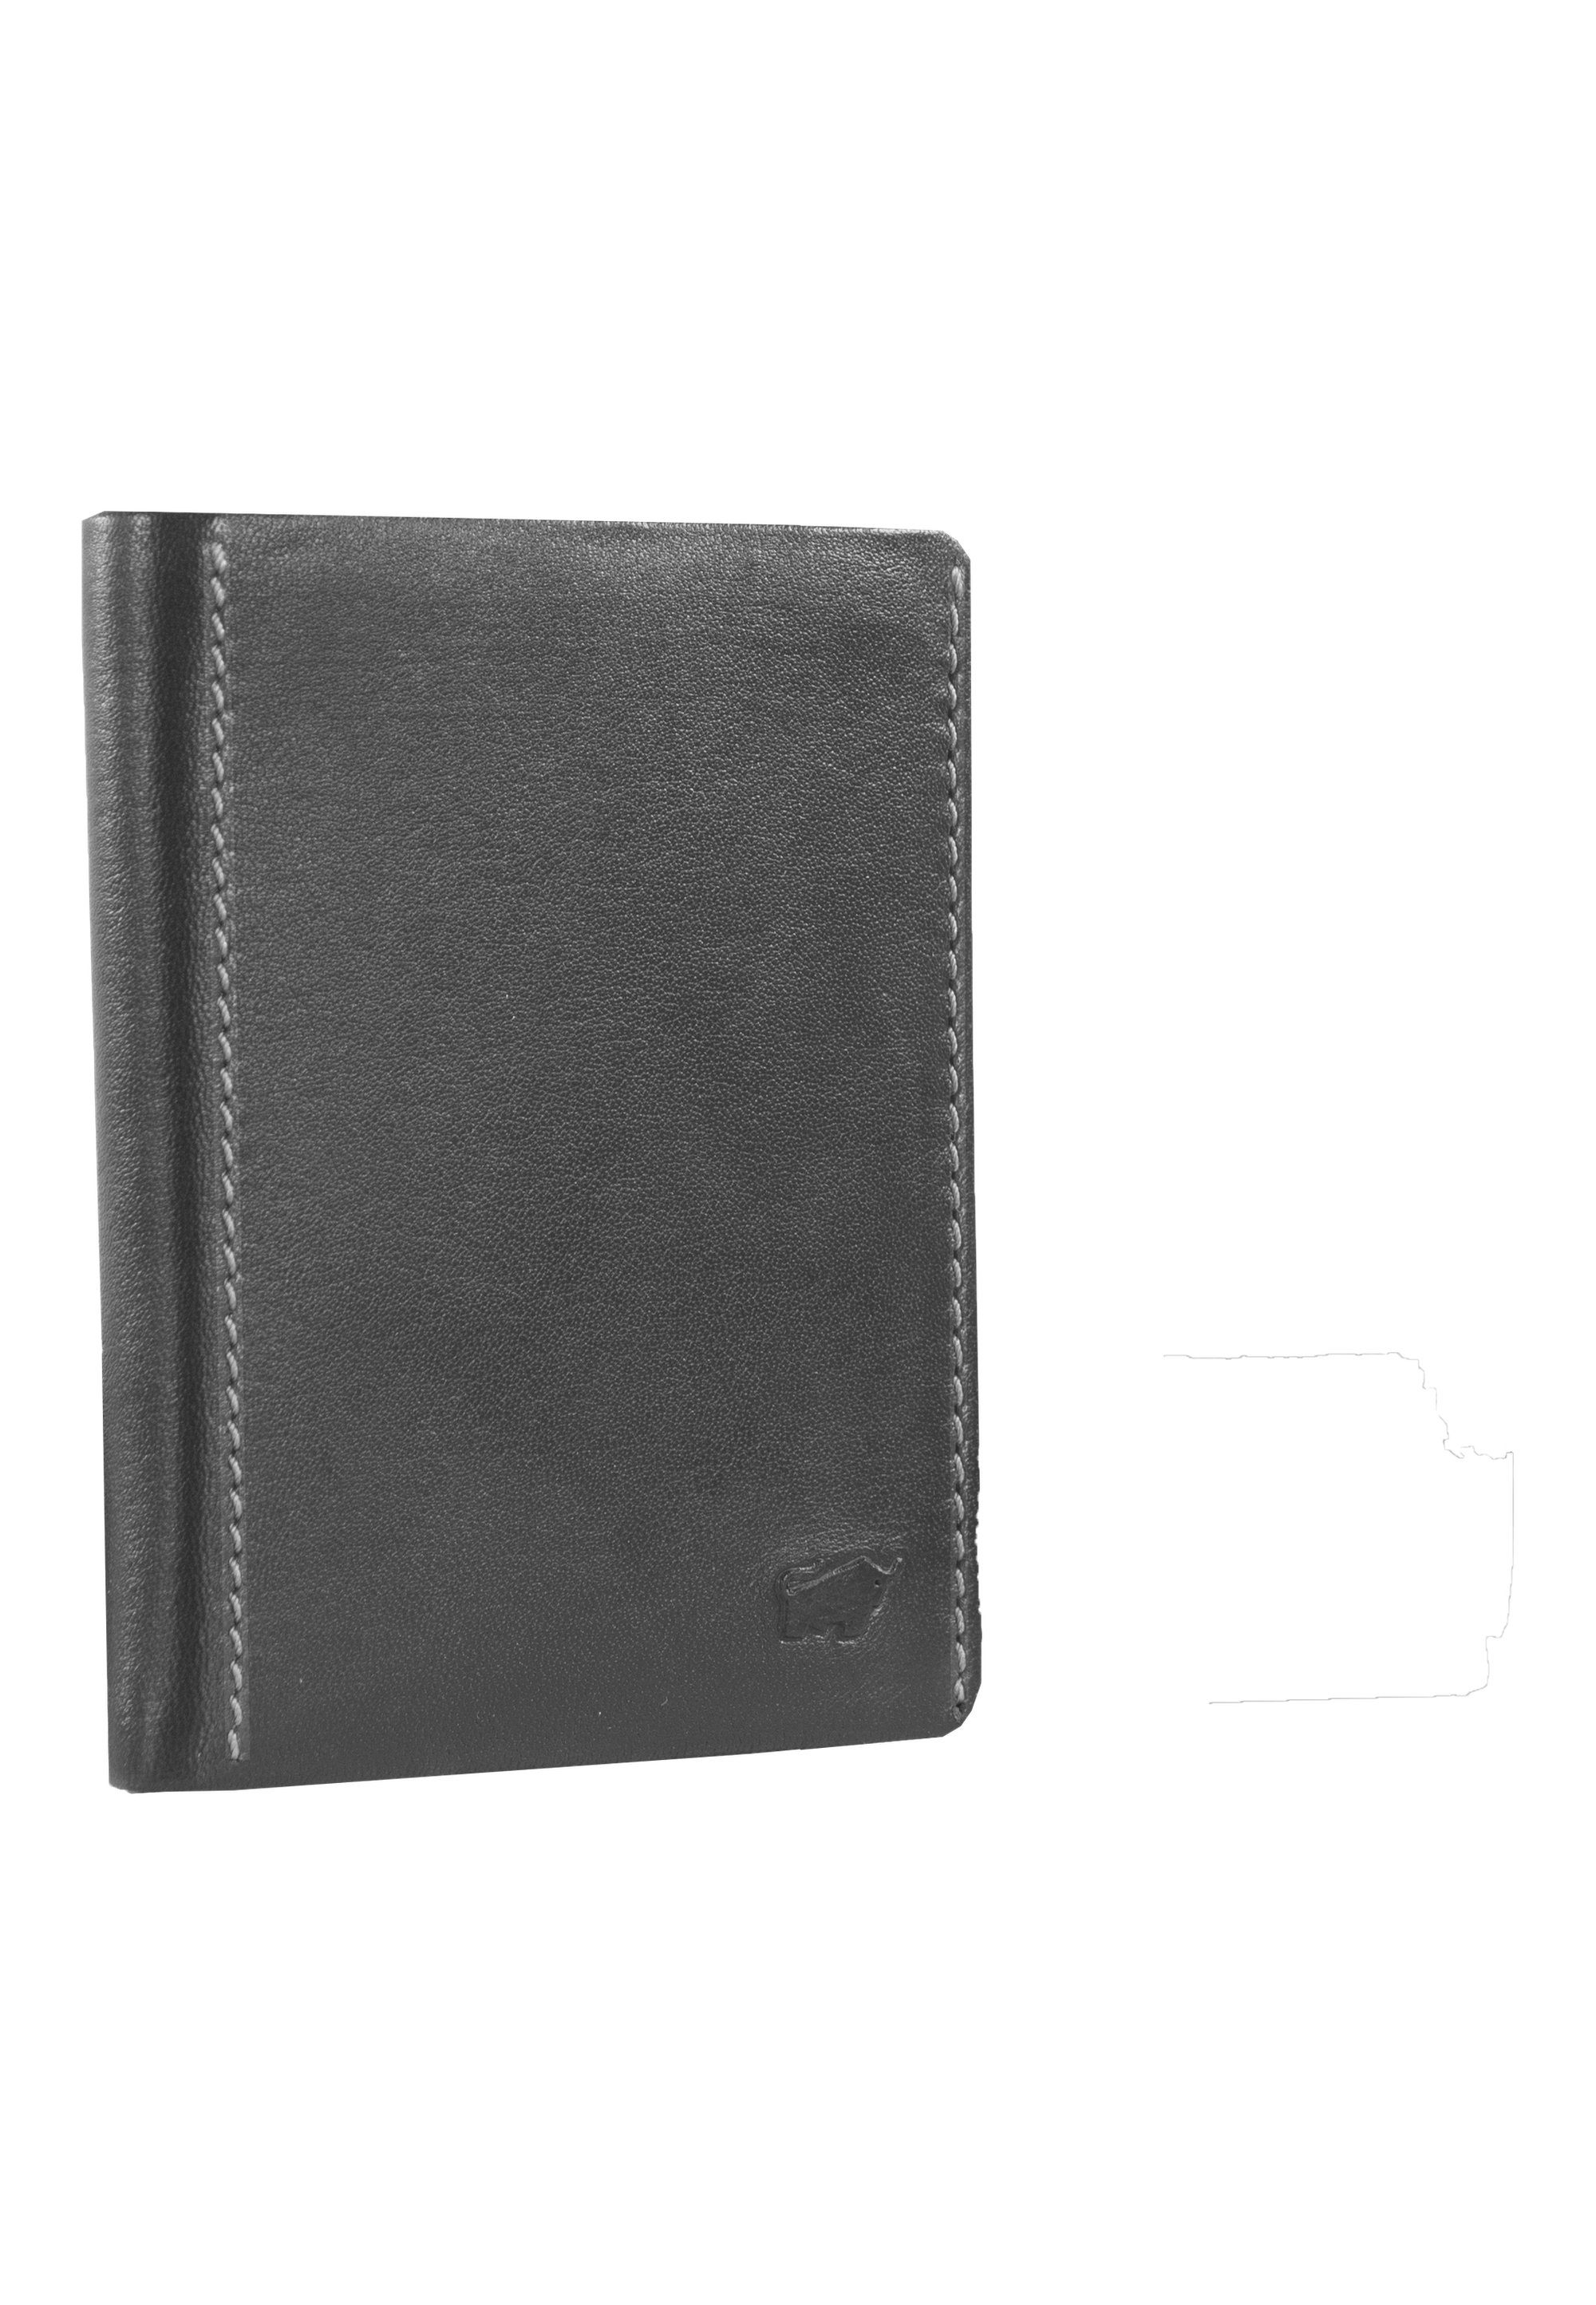 HENRY, im schwarz Braun Hochkantformat Brieftasche Büffel